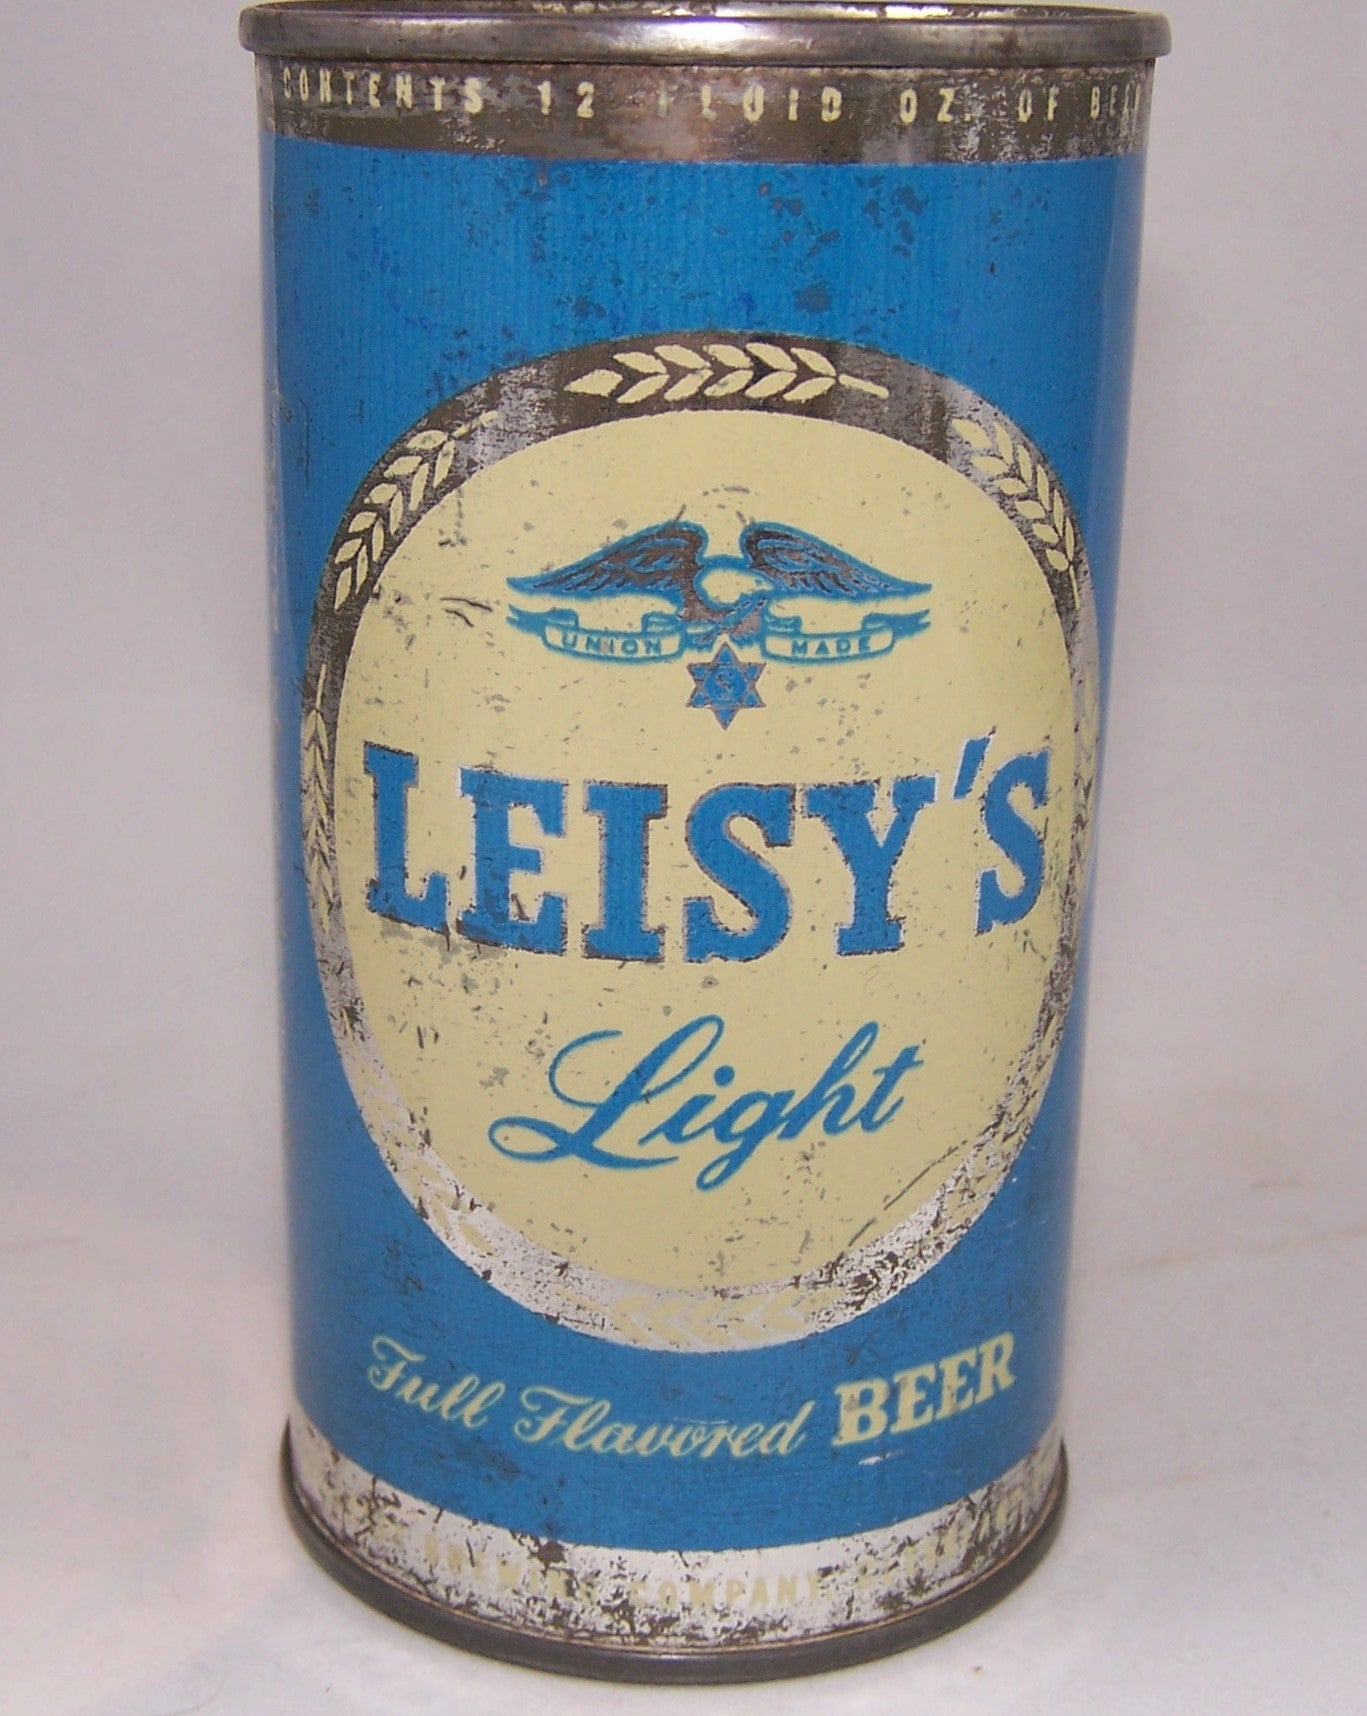 Leisy's Light Beer, USBC 91-24, Grade 1-/2+ Sold on 05/02/16